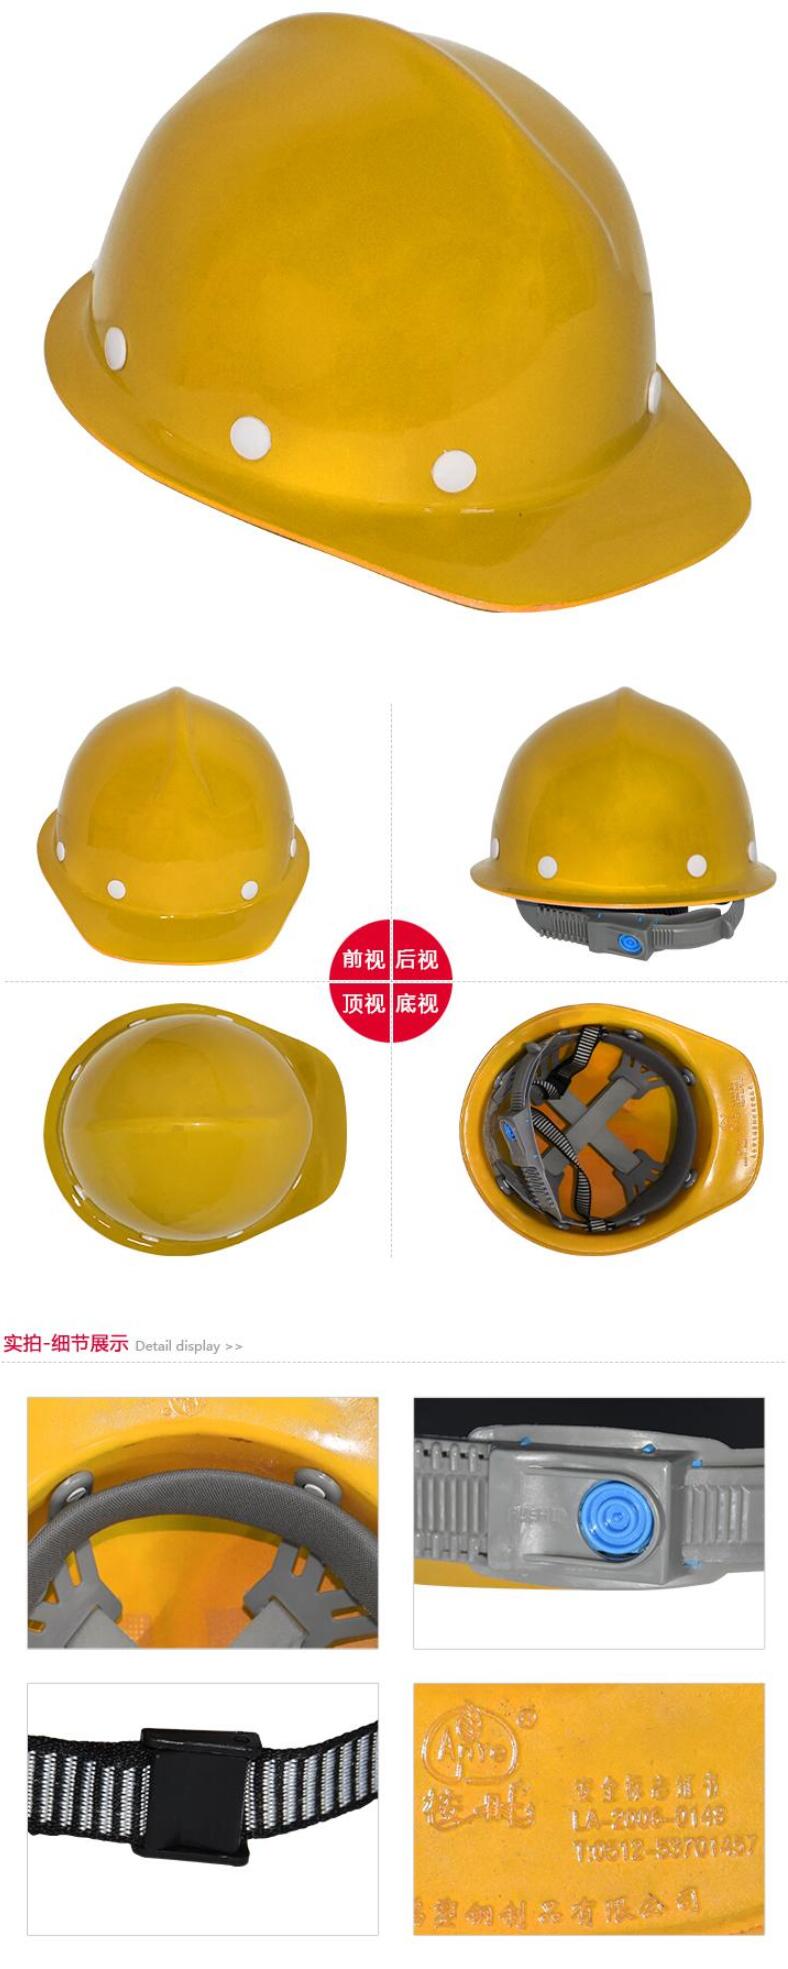 桉叶AY9703耐高温玻璃钢安全帽图片